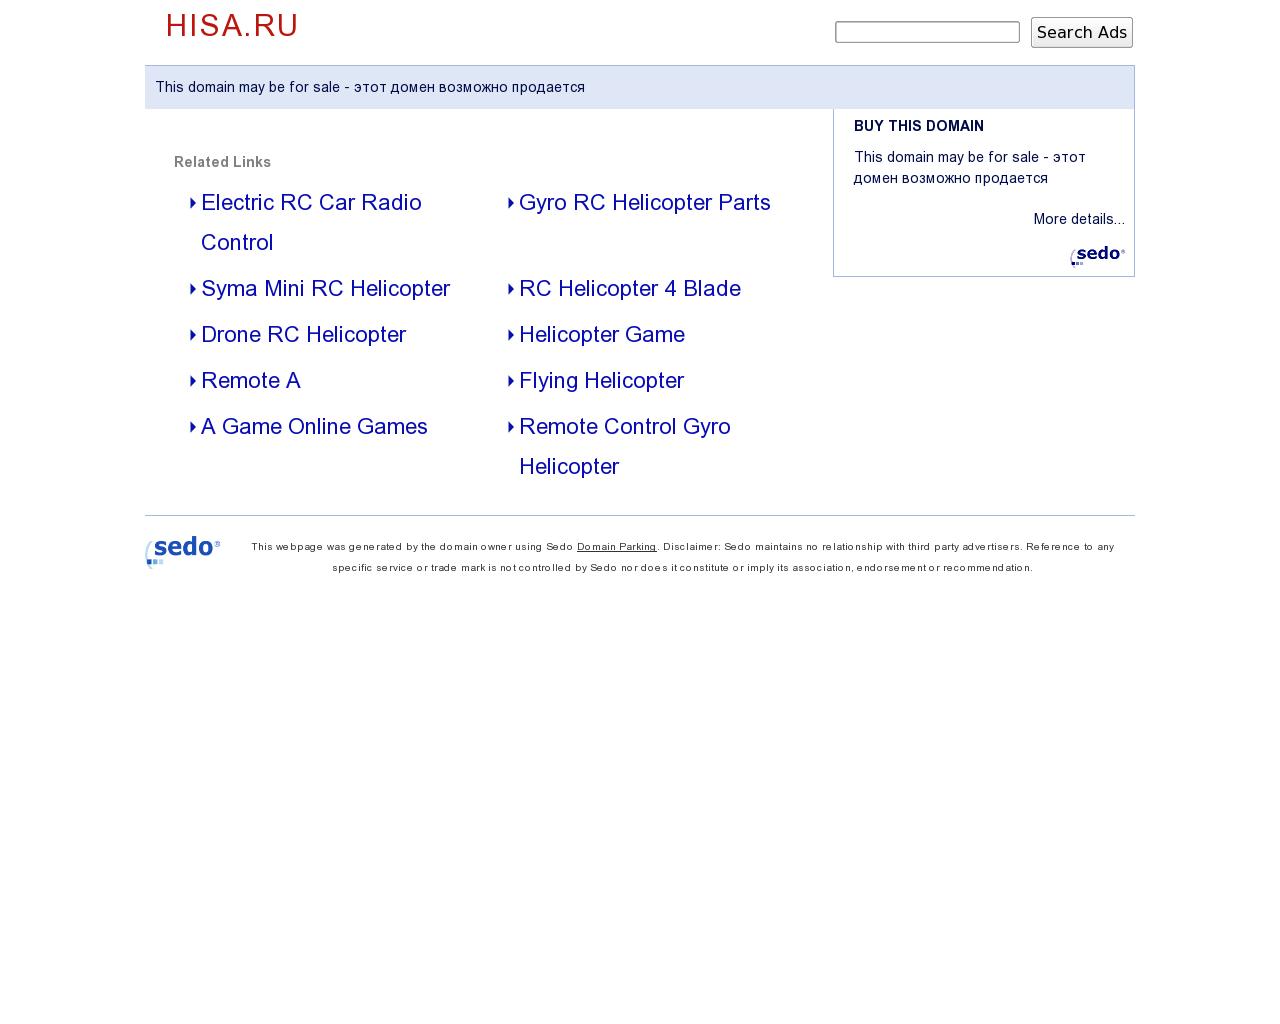 Изображение сайта hisa.ru в разрешении 1280x1024